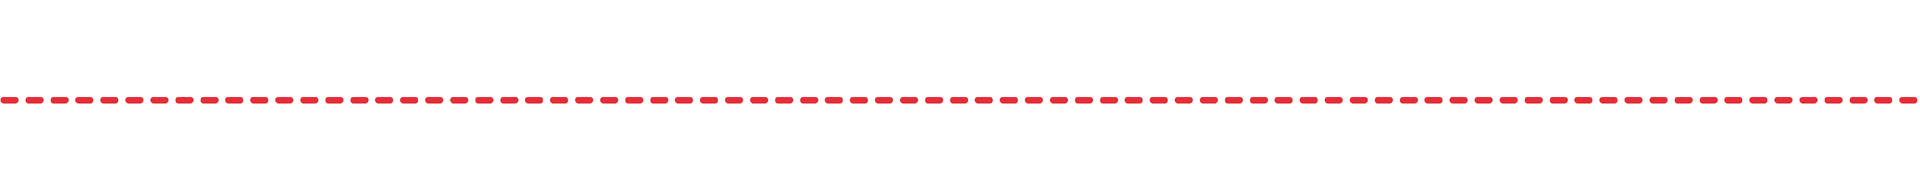 Kapitelavskiljare - röd streckad linje